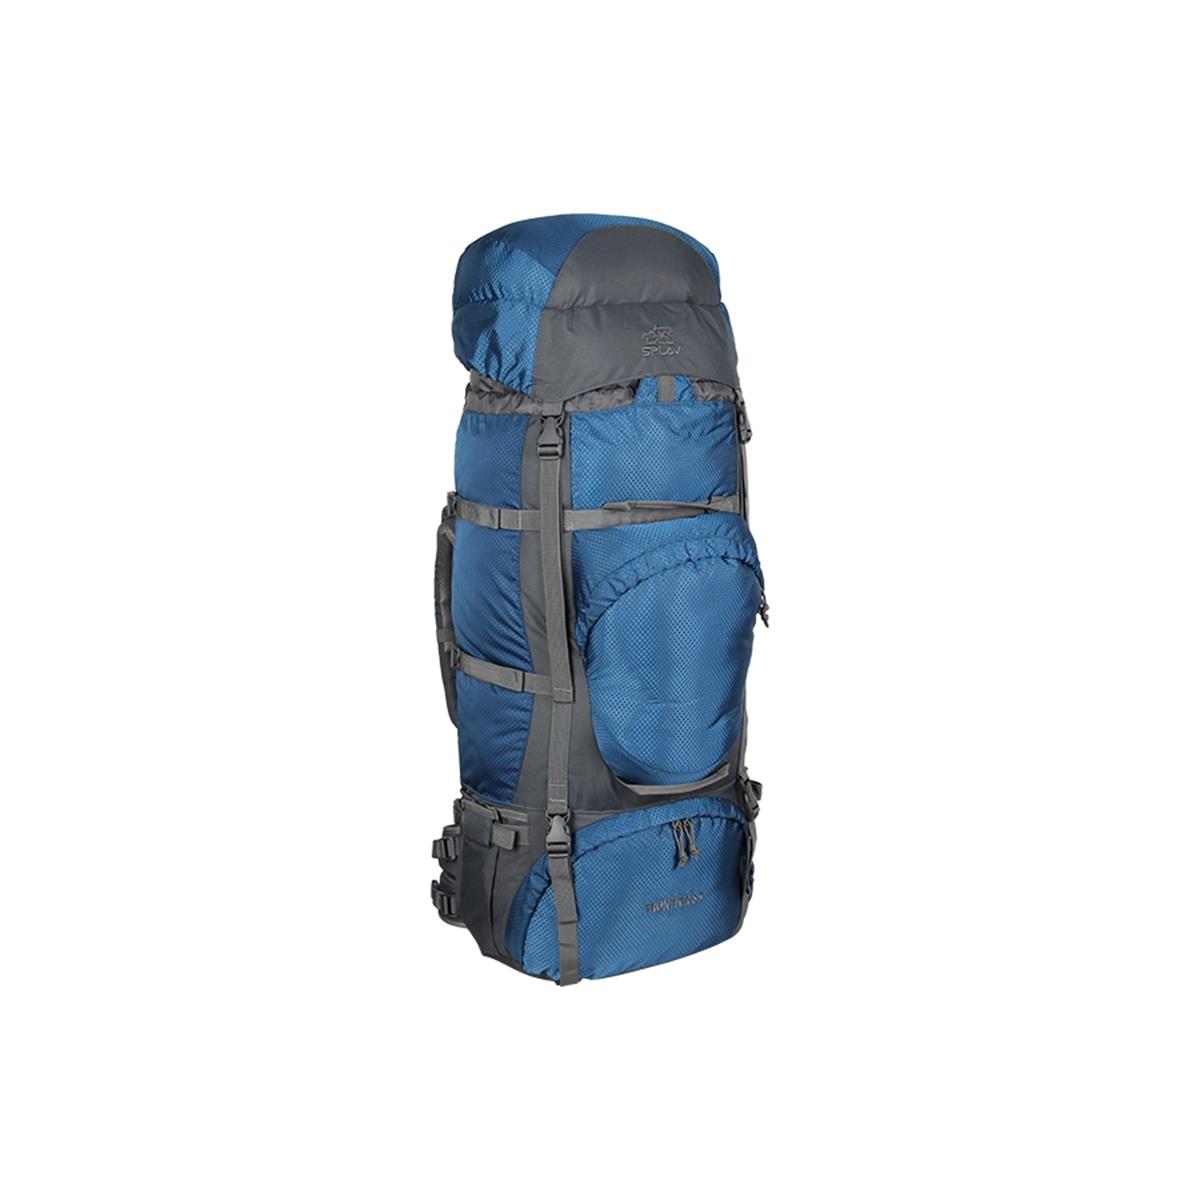 Рюкзак Frontier 85 СПЛАВ рюкзак на молнии голубой